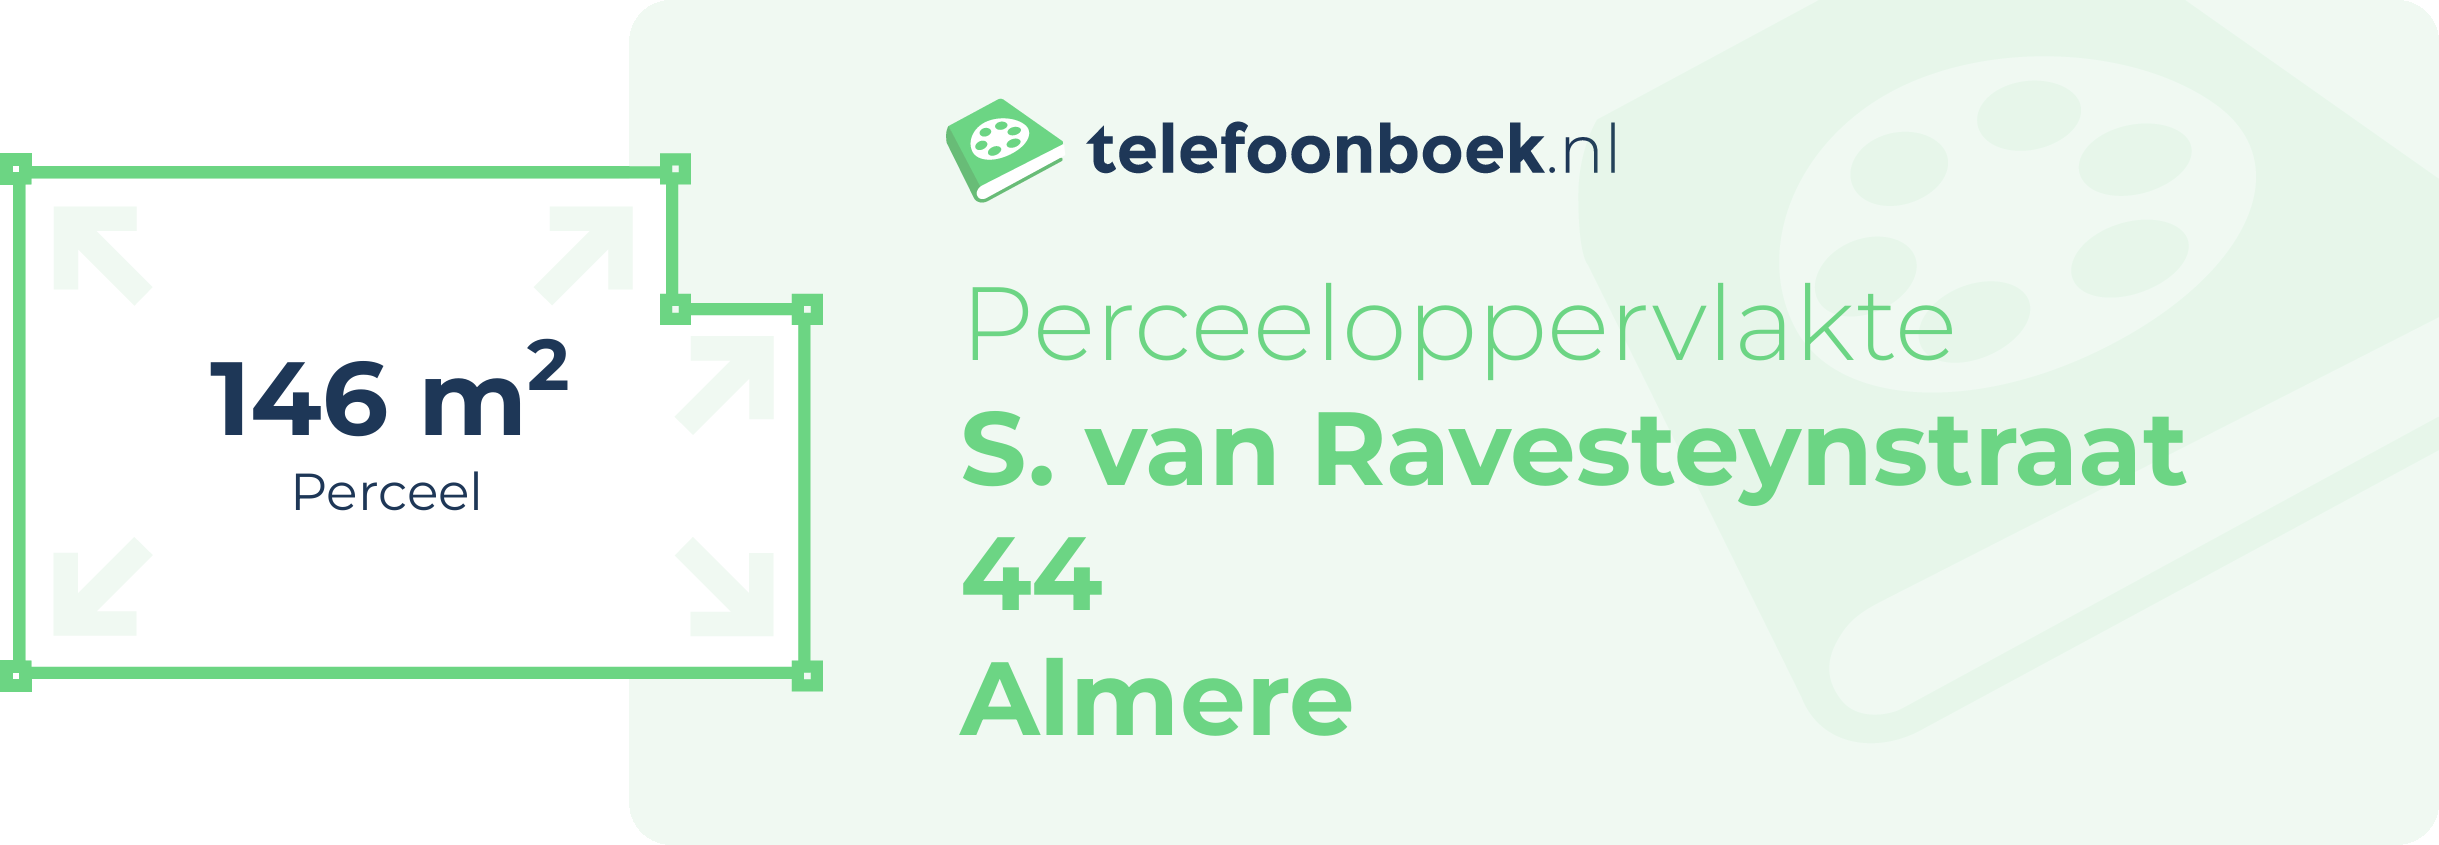 Perceeloppervlakte S. Van Ravesteynstraat 44 Almere